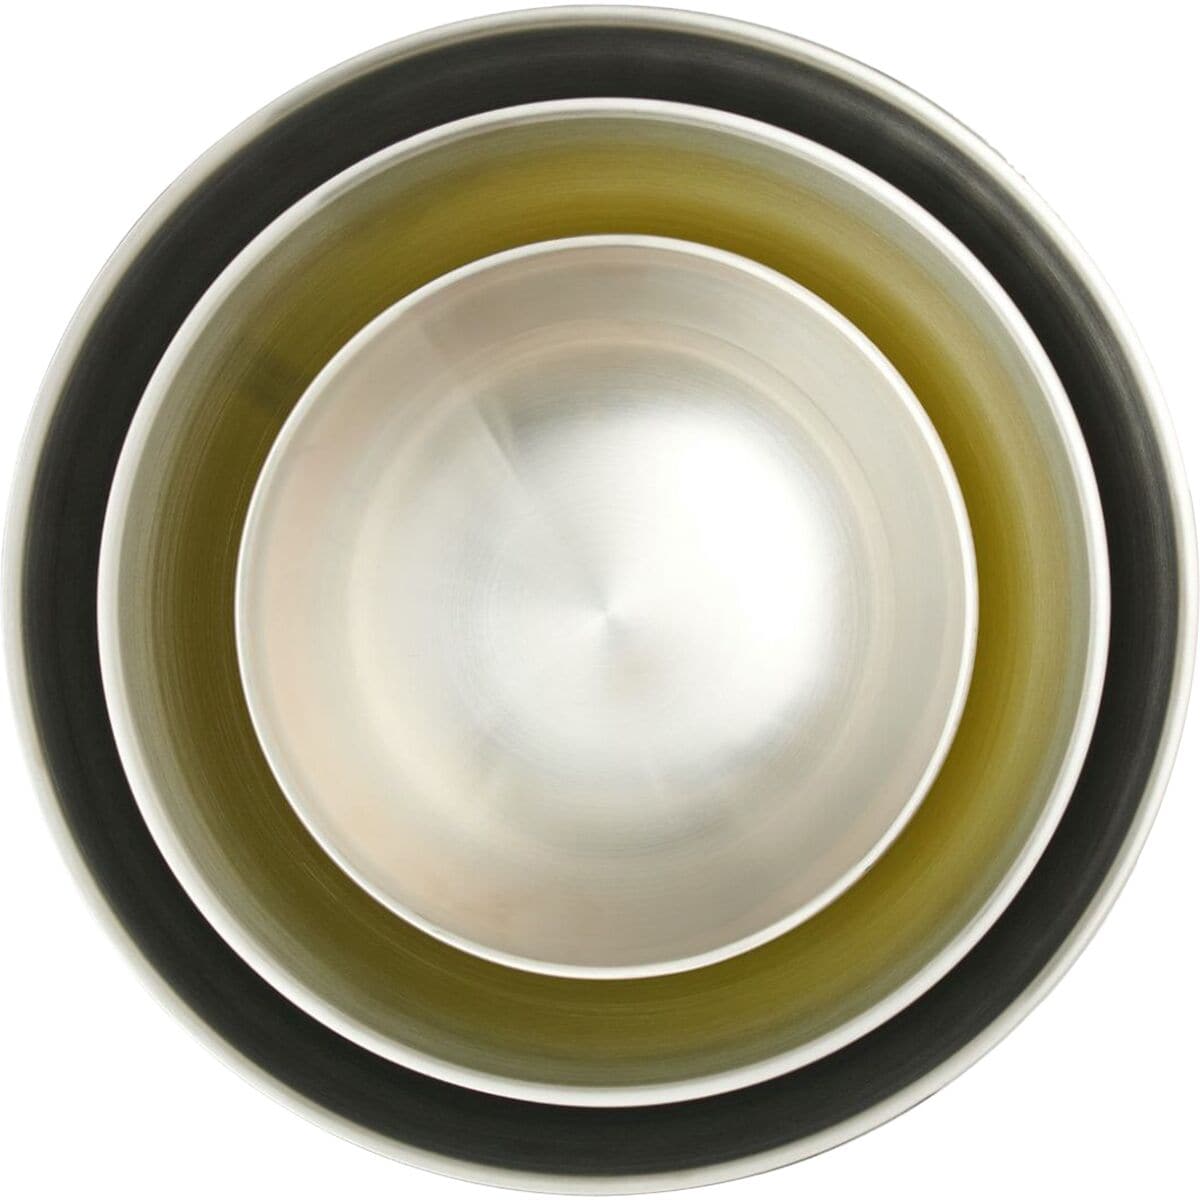 Hydro Flask 1 Quart Bowl w/ Lid - 1 Quart, Olive